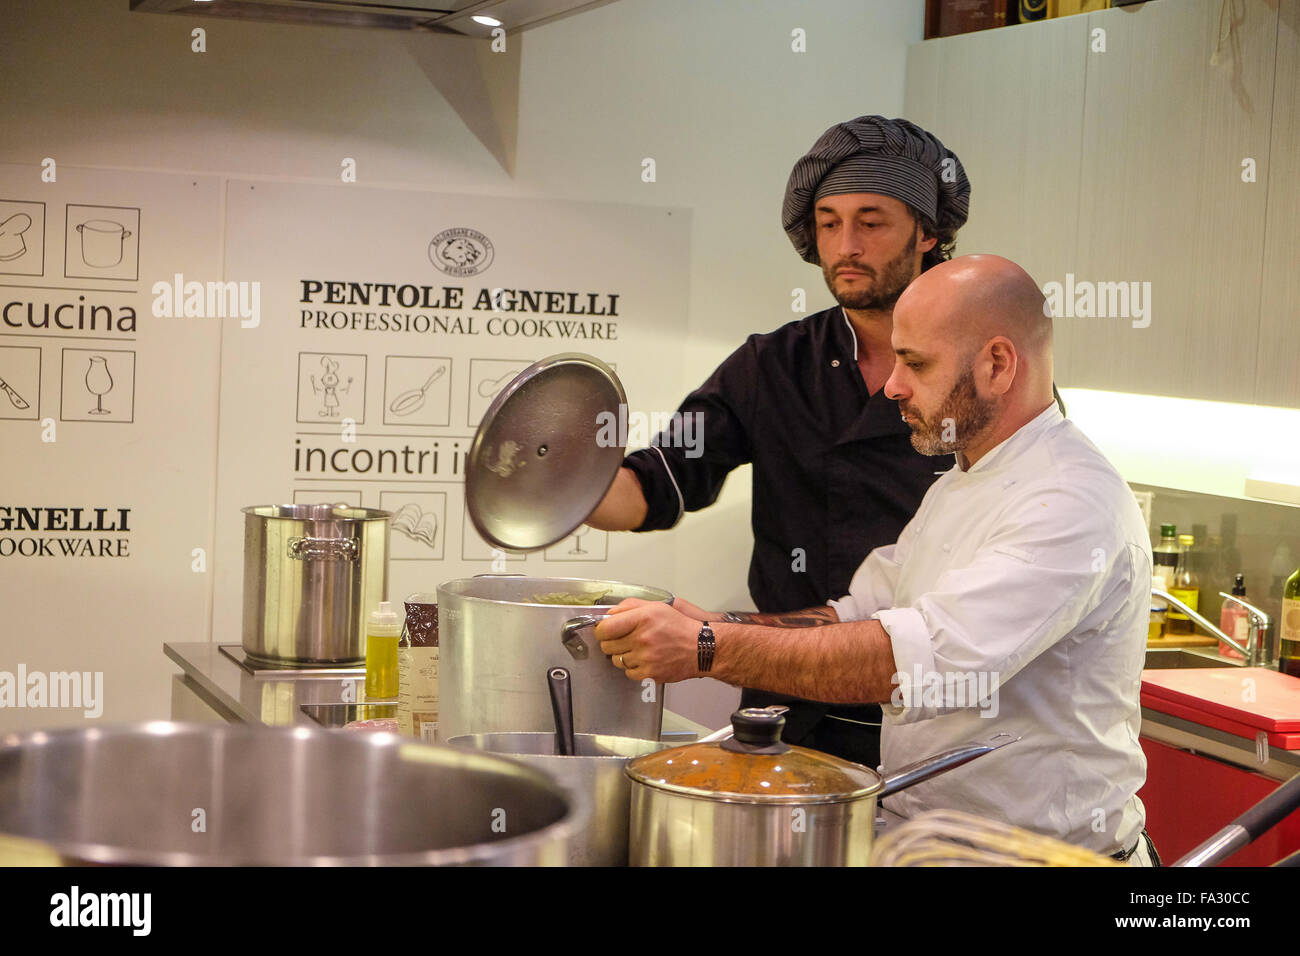 Con spettacolo di cucina a pentole Agnelli a Roma con Michele Cannistraro  (il cannibale di Masterchef) e Marco Gianfreda Foto stock - Alamy